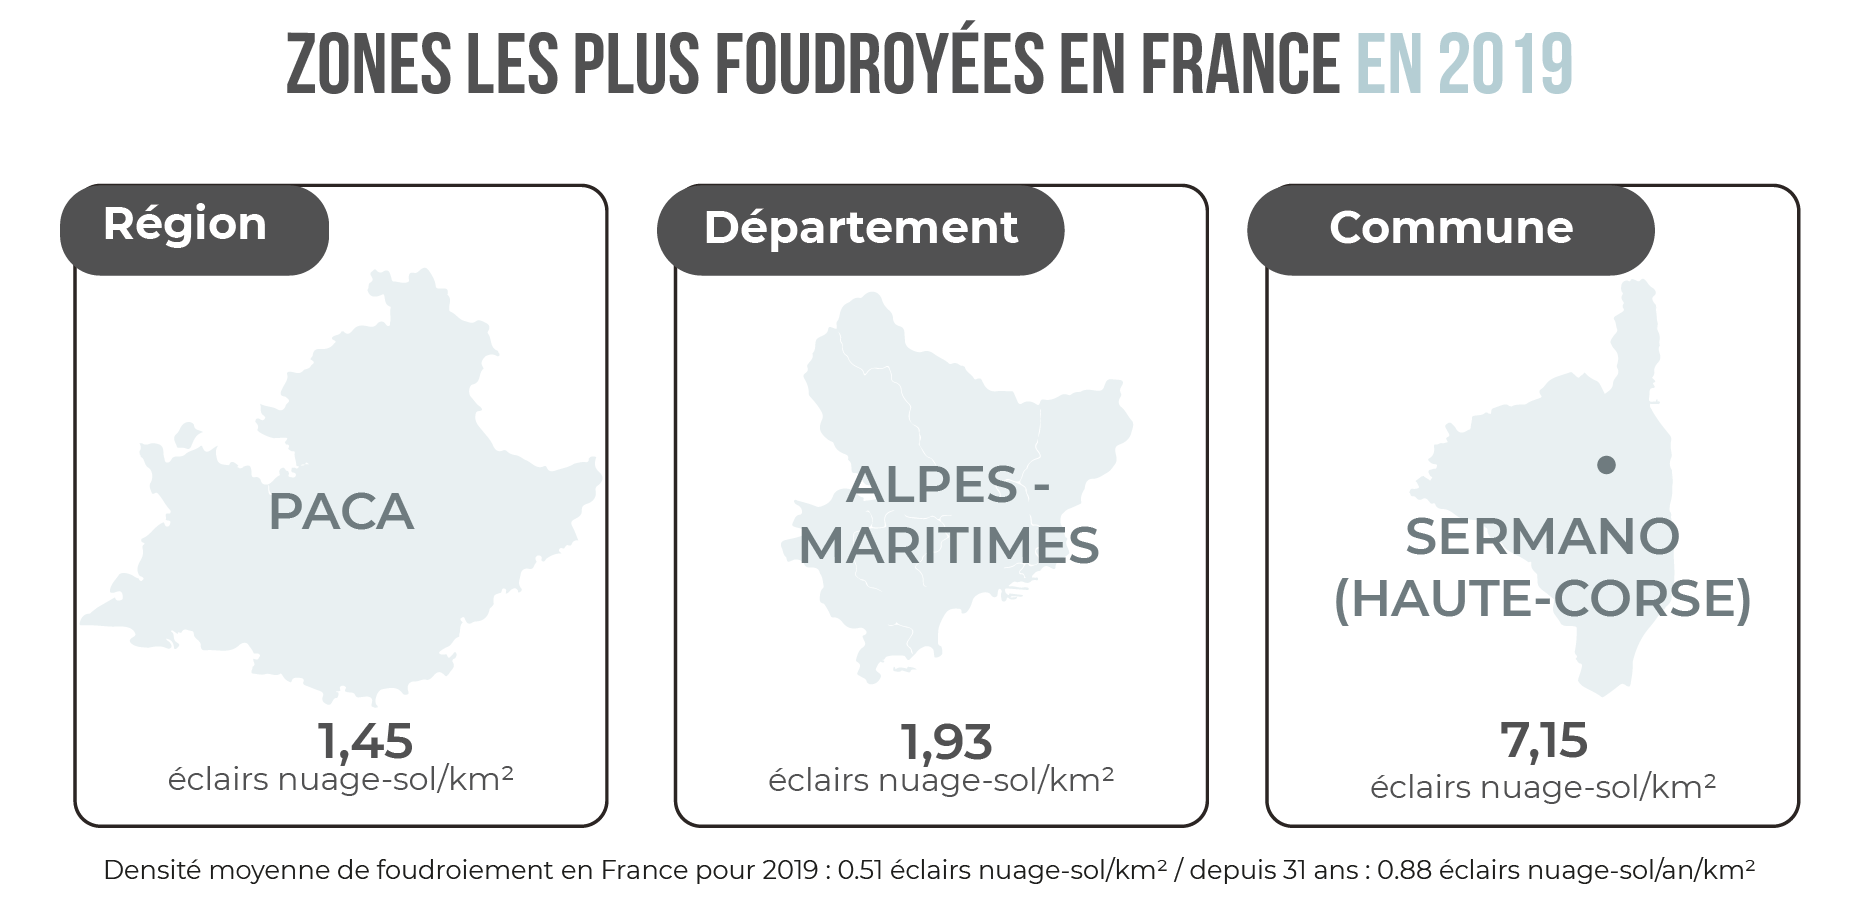 Zones les plus foudroyées en France en 2019